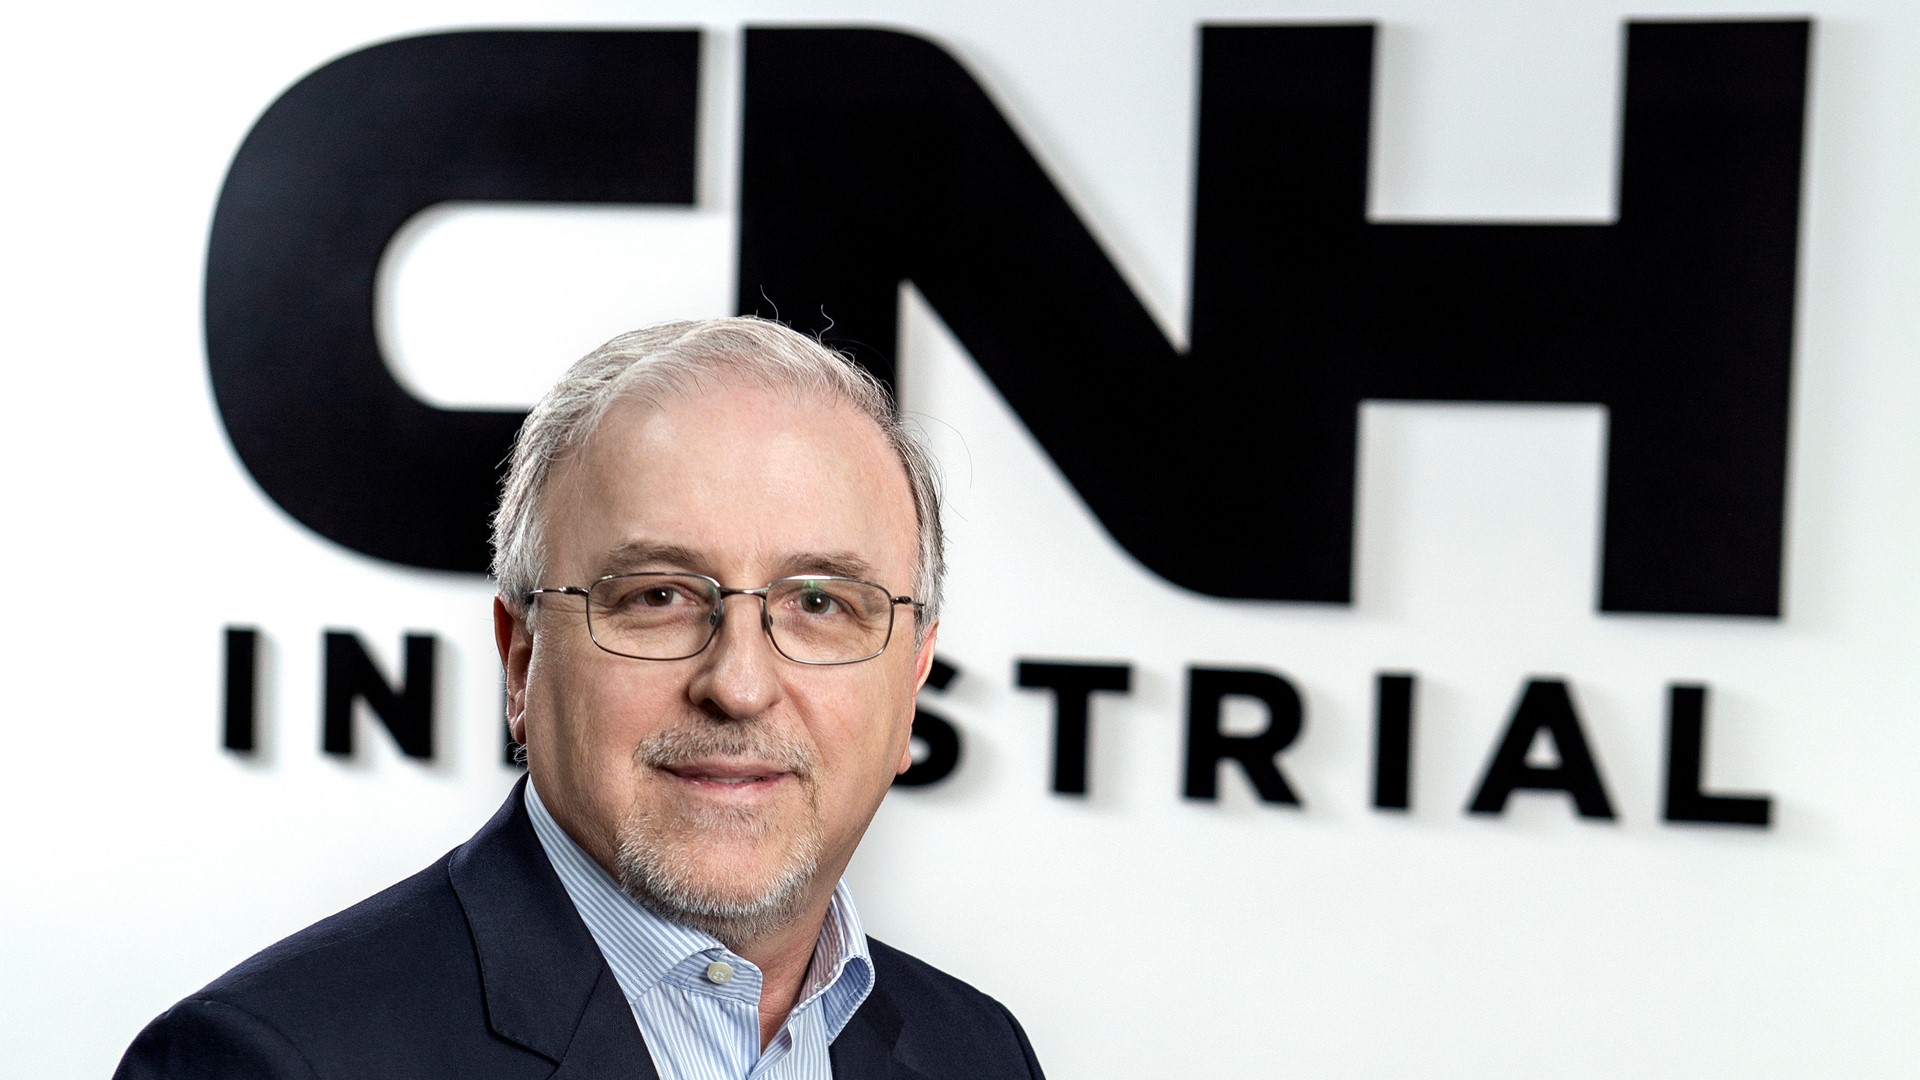 Vilmar Fistarol, President Latin America at CNH Industrial